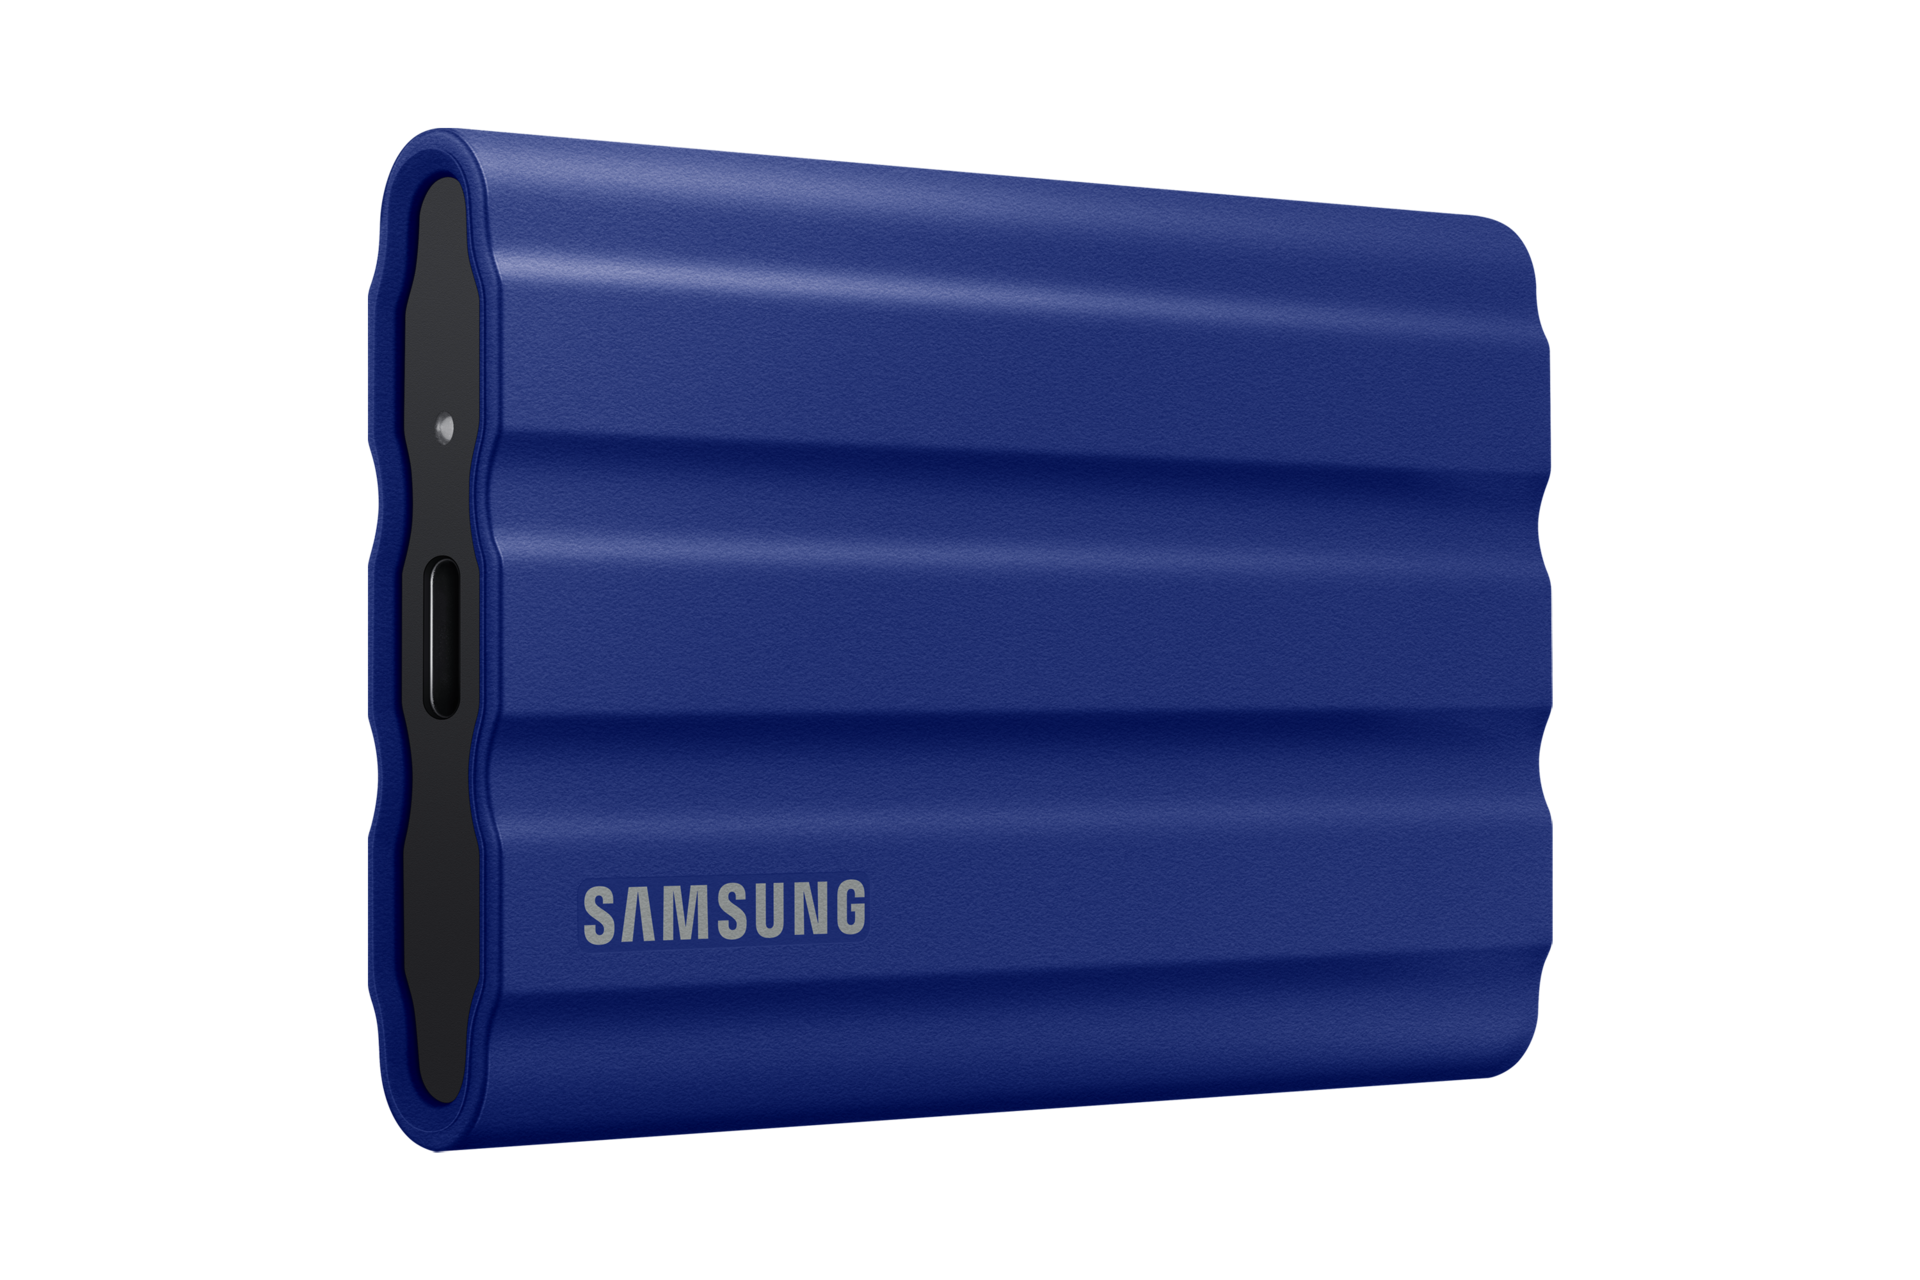 SAMSUNG T7 SHIELD PORTABLE SSD - EXTERNE Couleur Noir Capacité 1 To